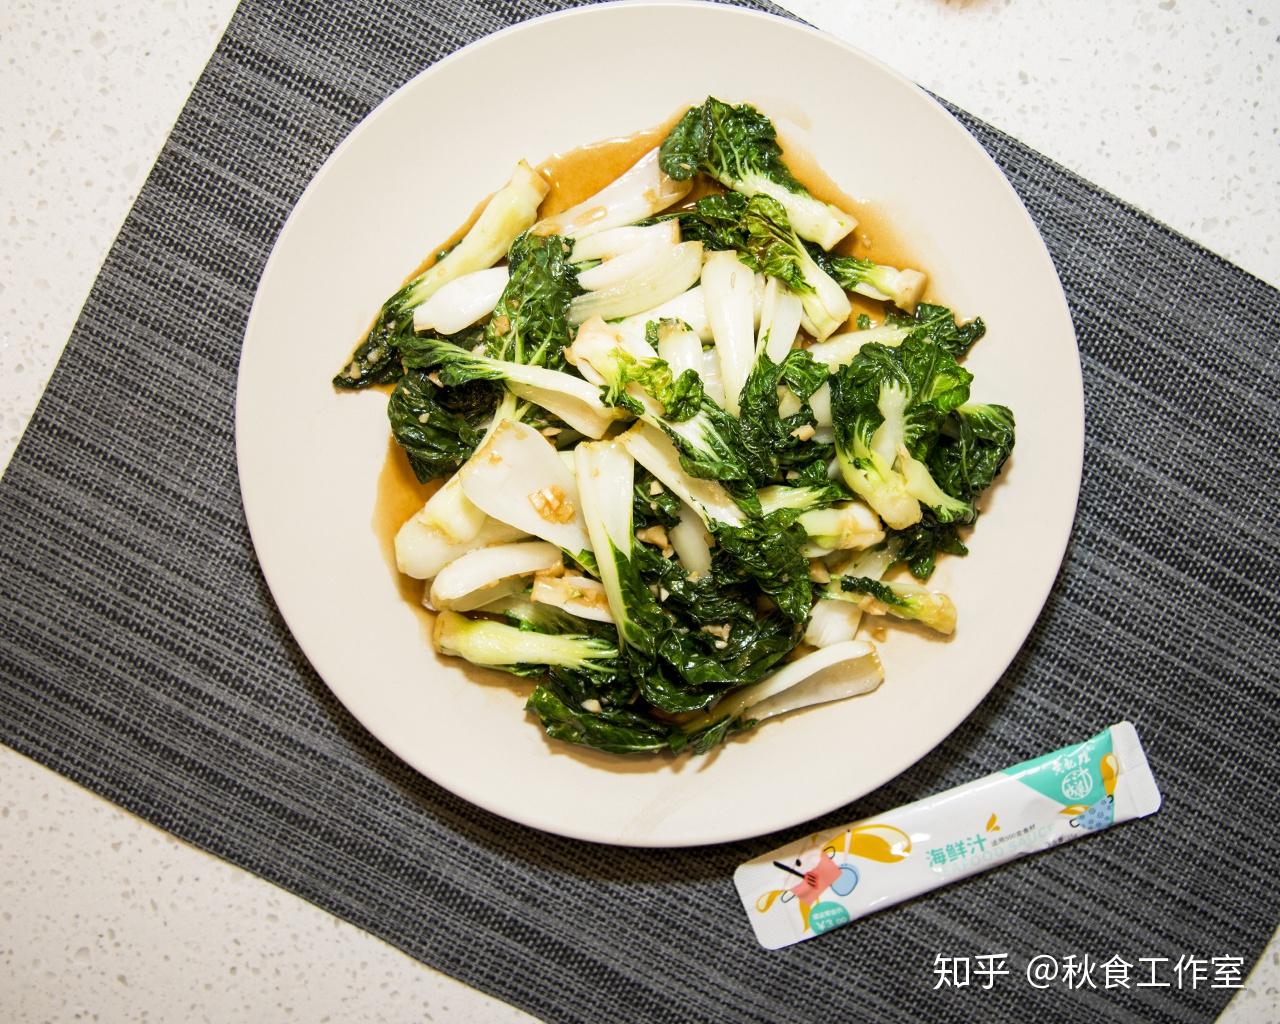 奶白菜-挑选-价格-菜谱--广州天天生鲜蔬菜配送公司